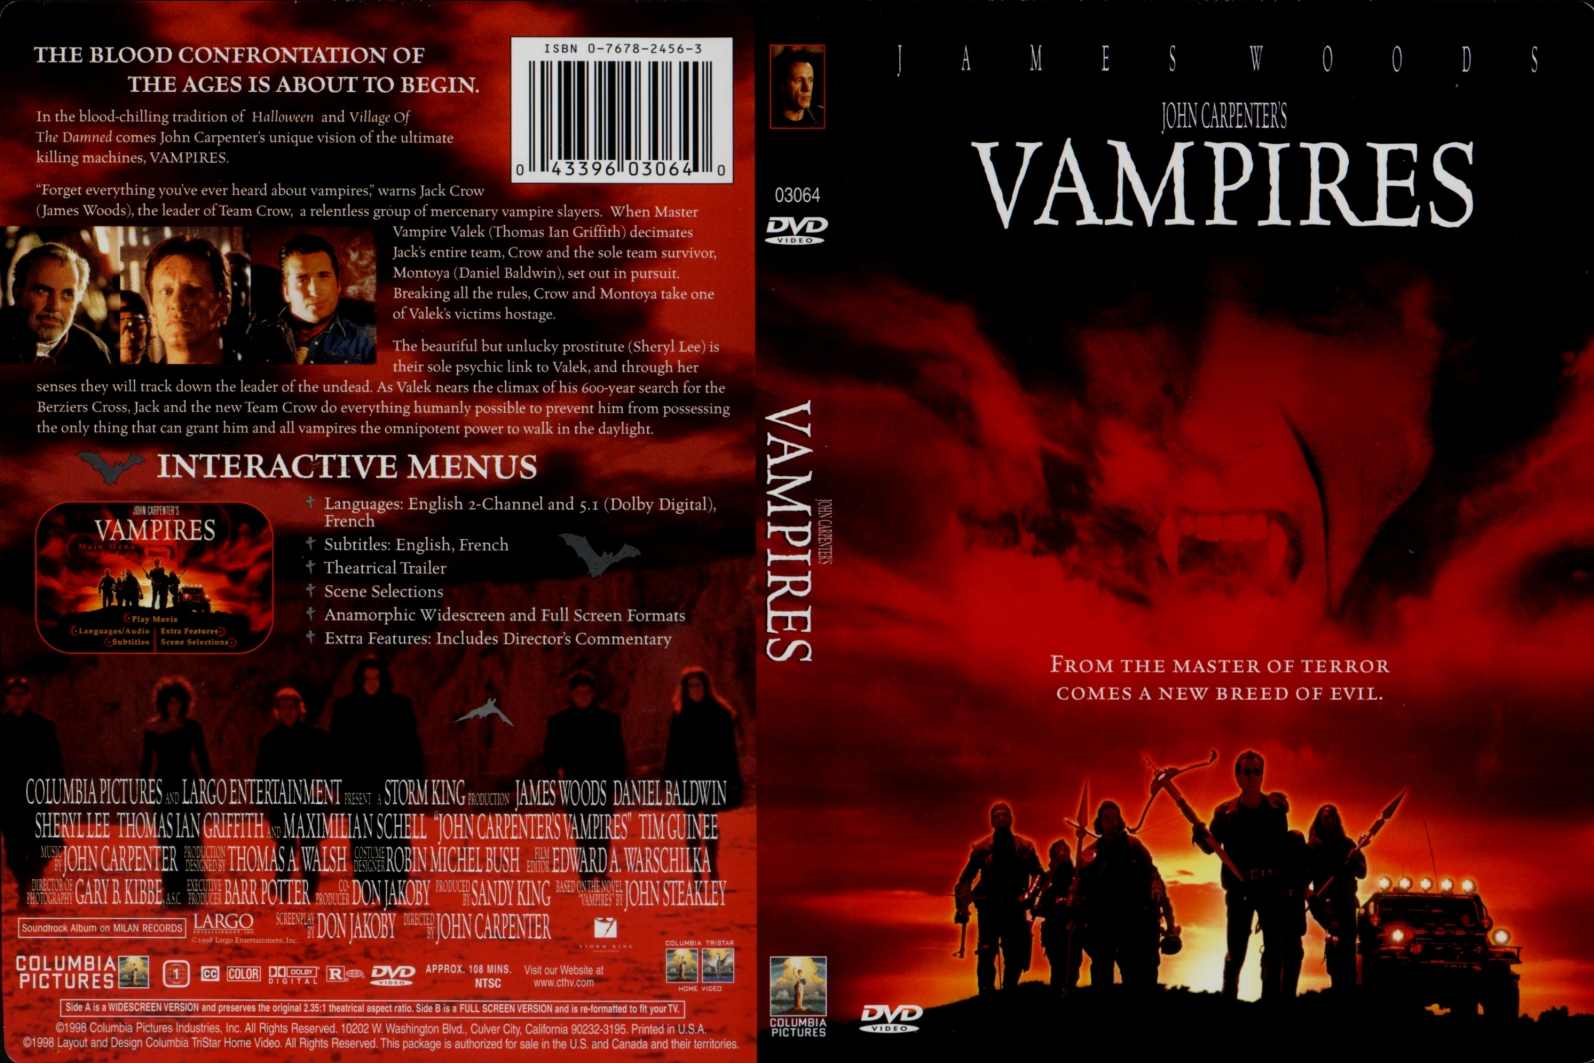 JOHN CARPENTER'S “VAMPIRES” (1998)